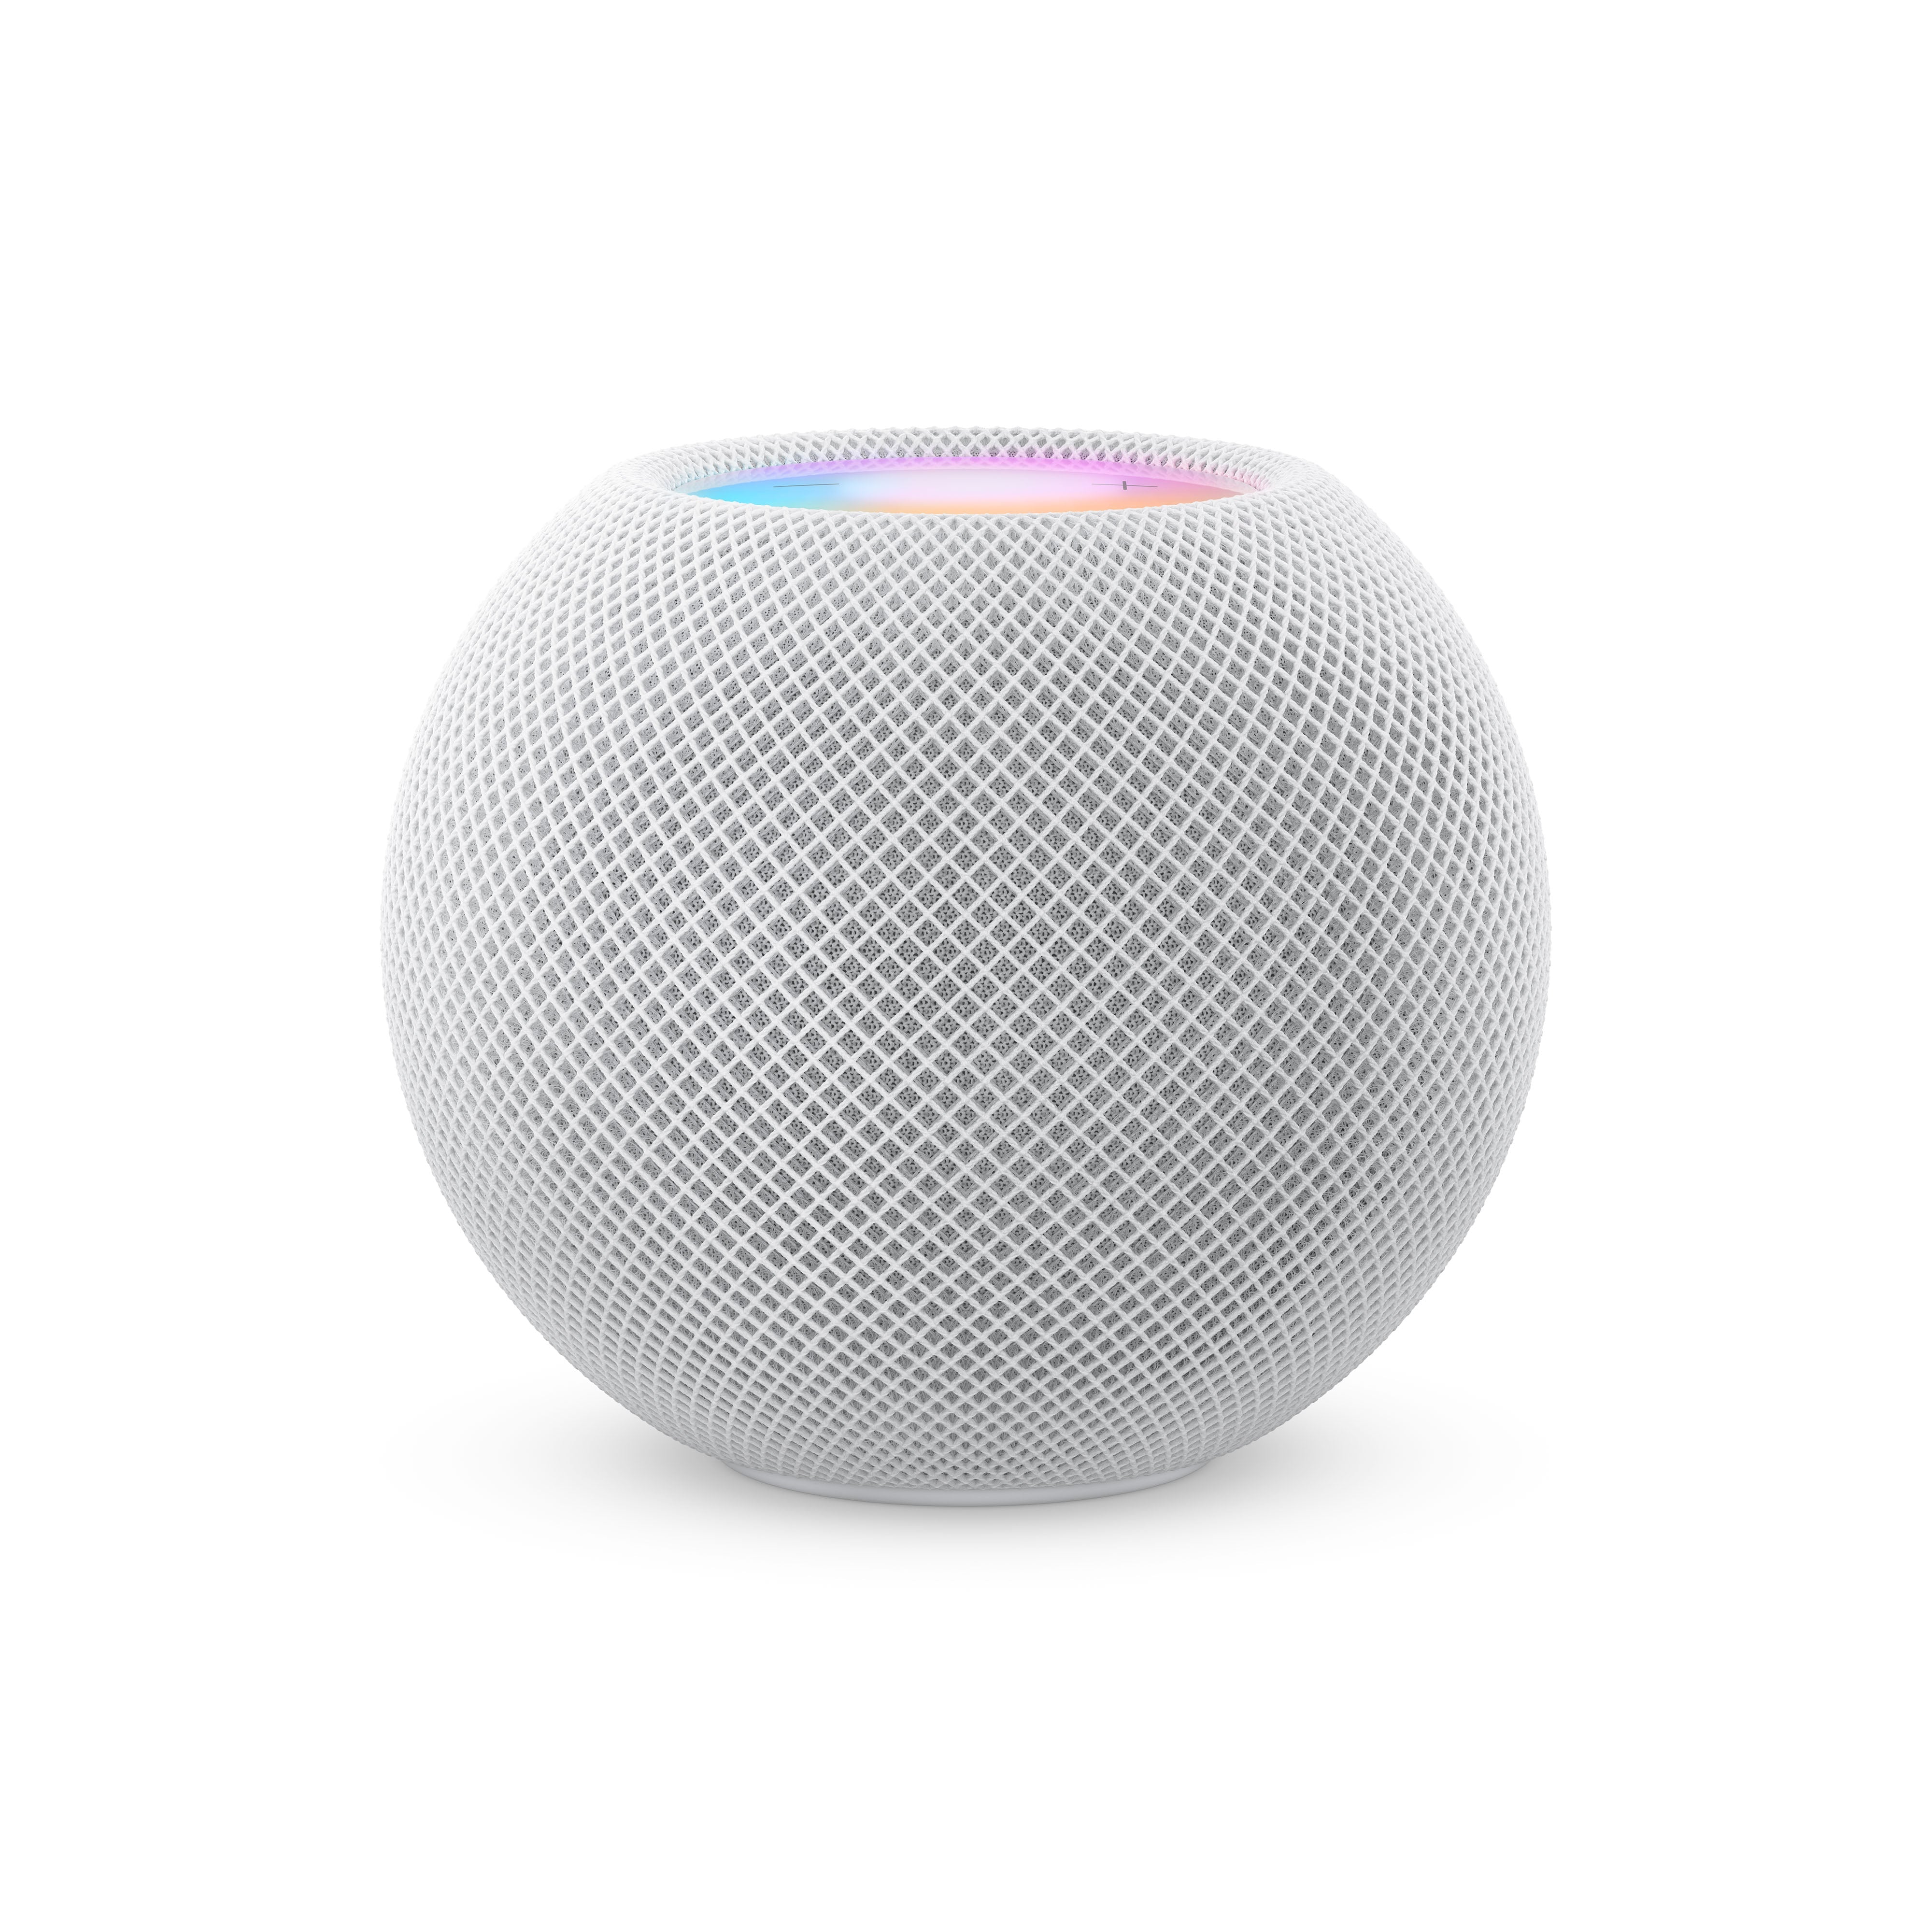 Apple HomePod 2: altavoces inteligentes con soporte para TV 4K y Siri